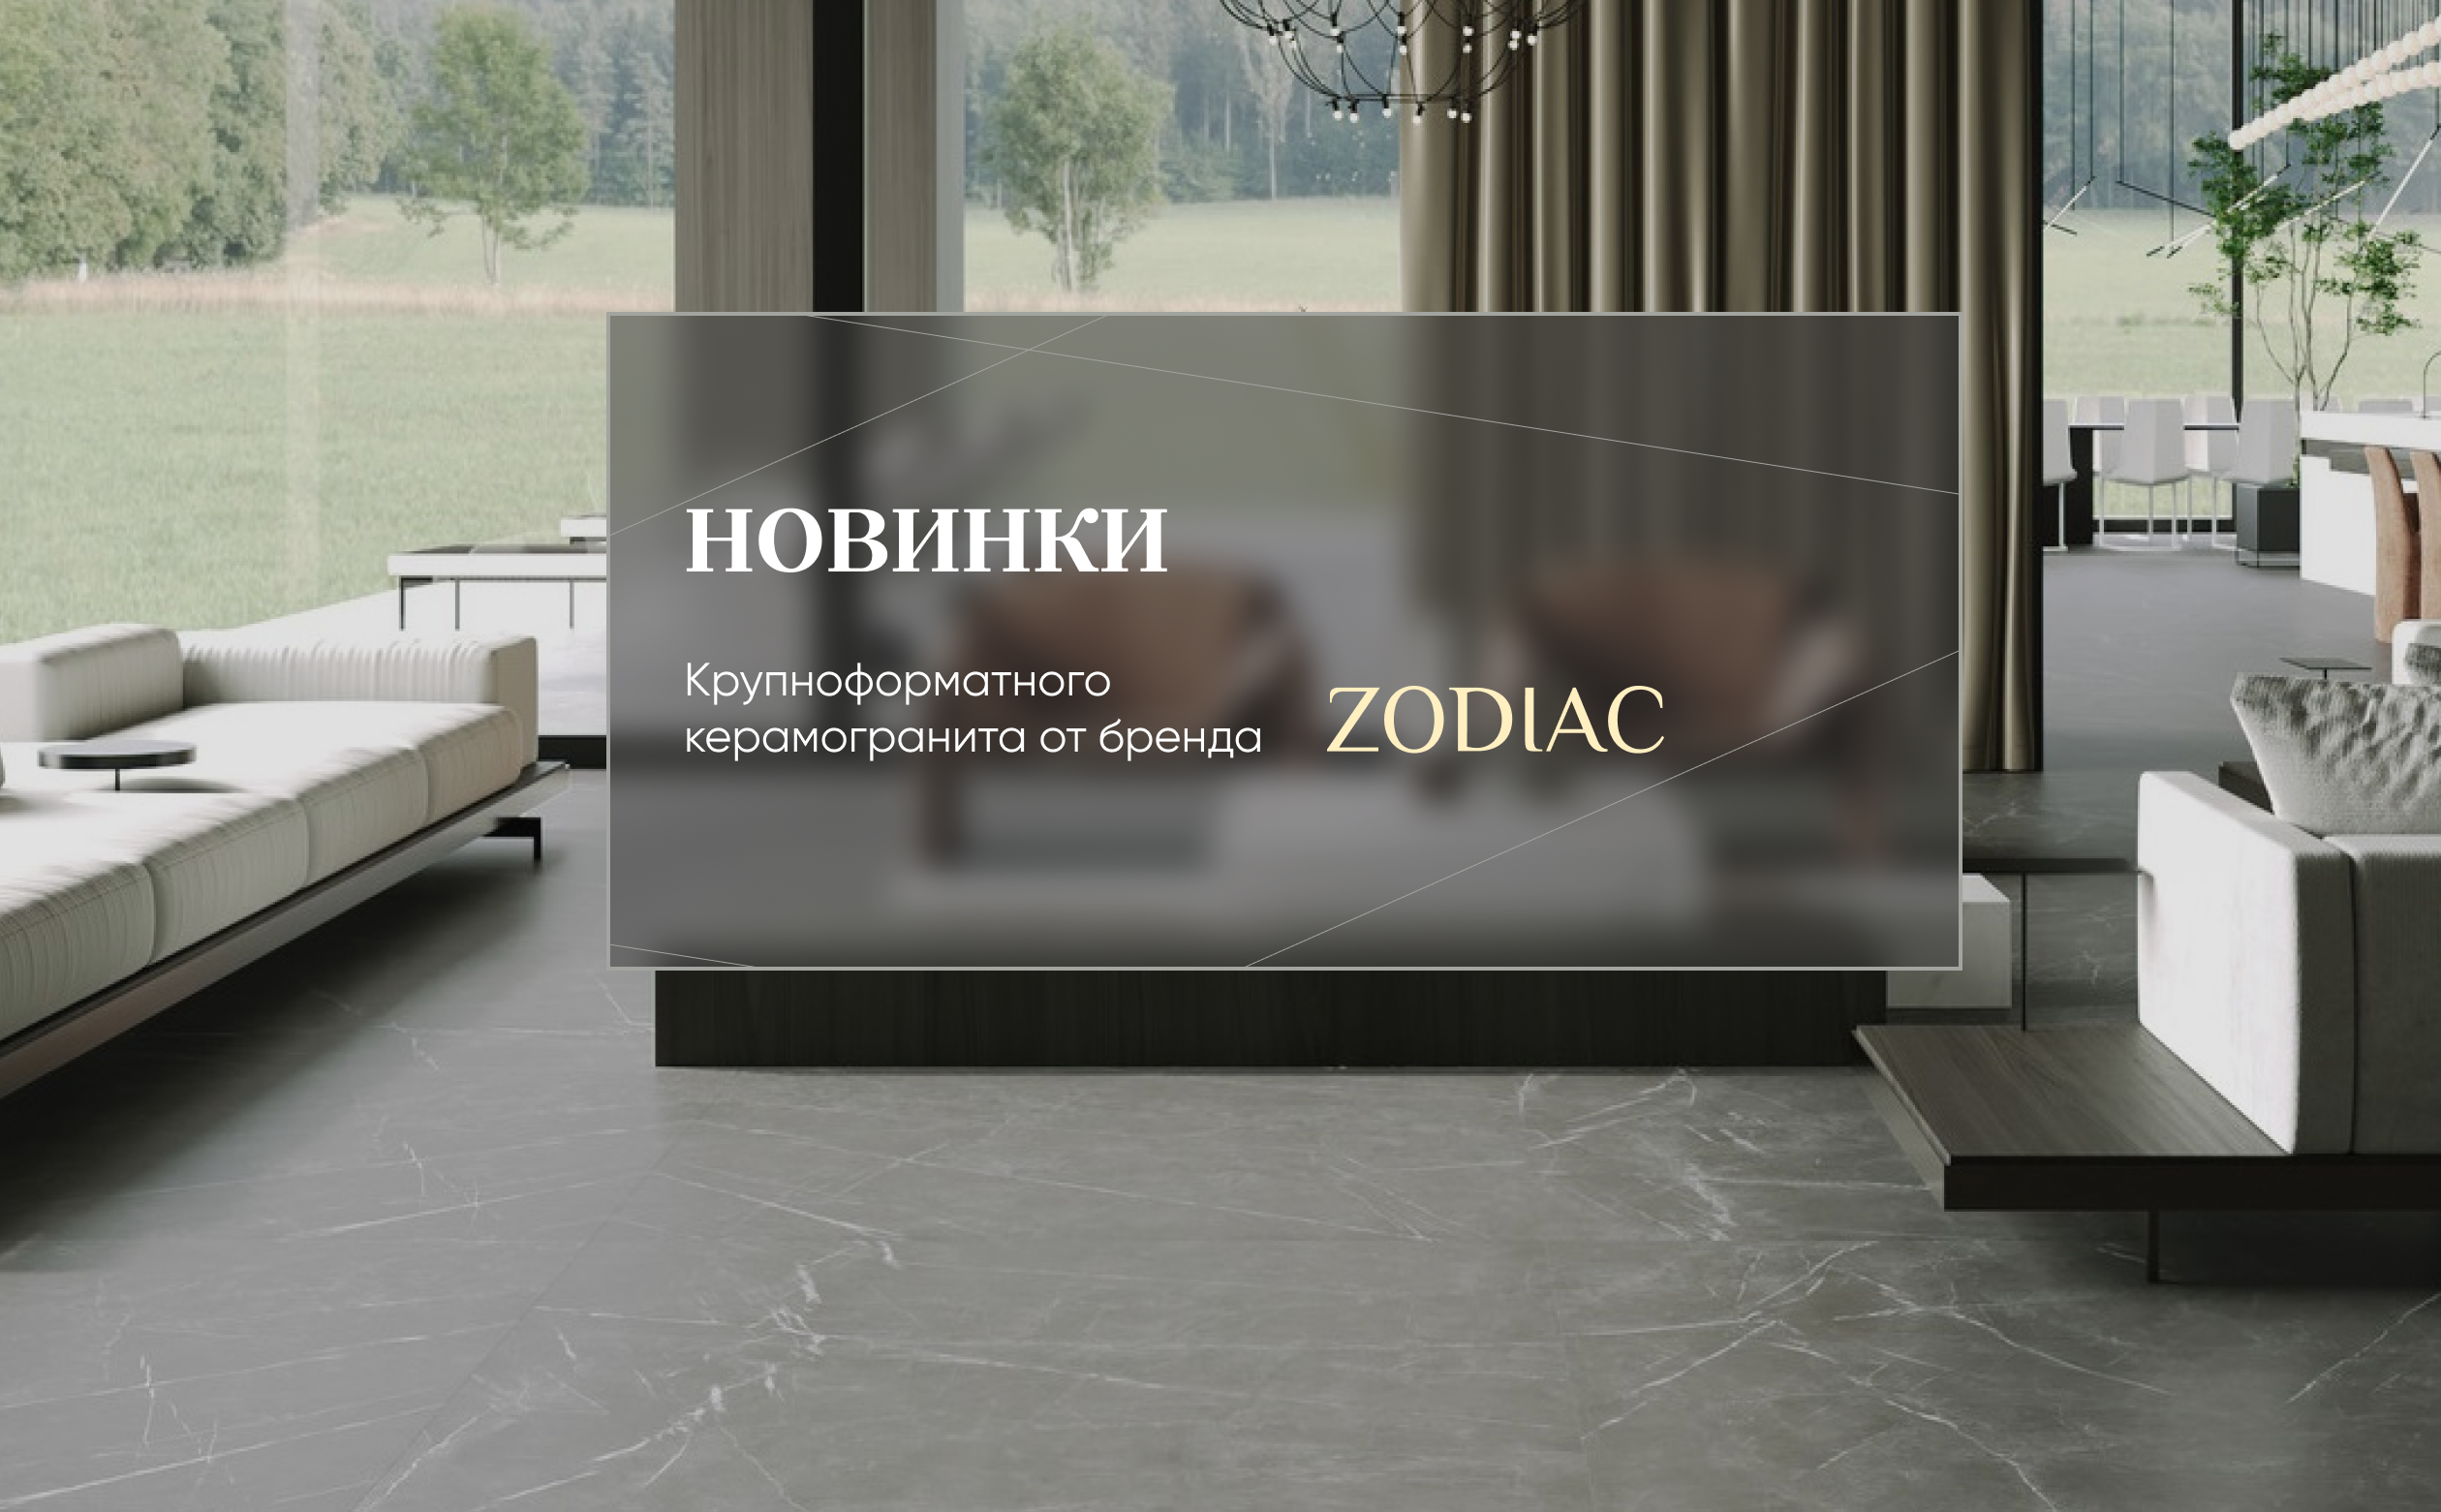 Новинки  от бренда ZODIAC формата 120х120 (9 мм)